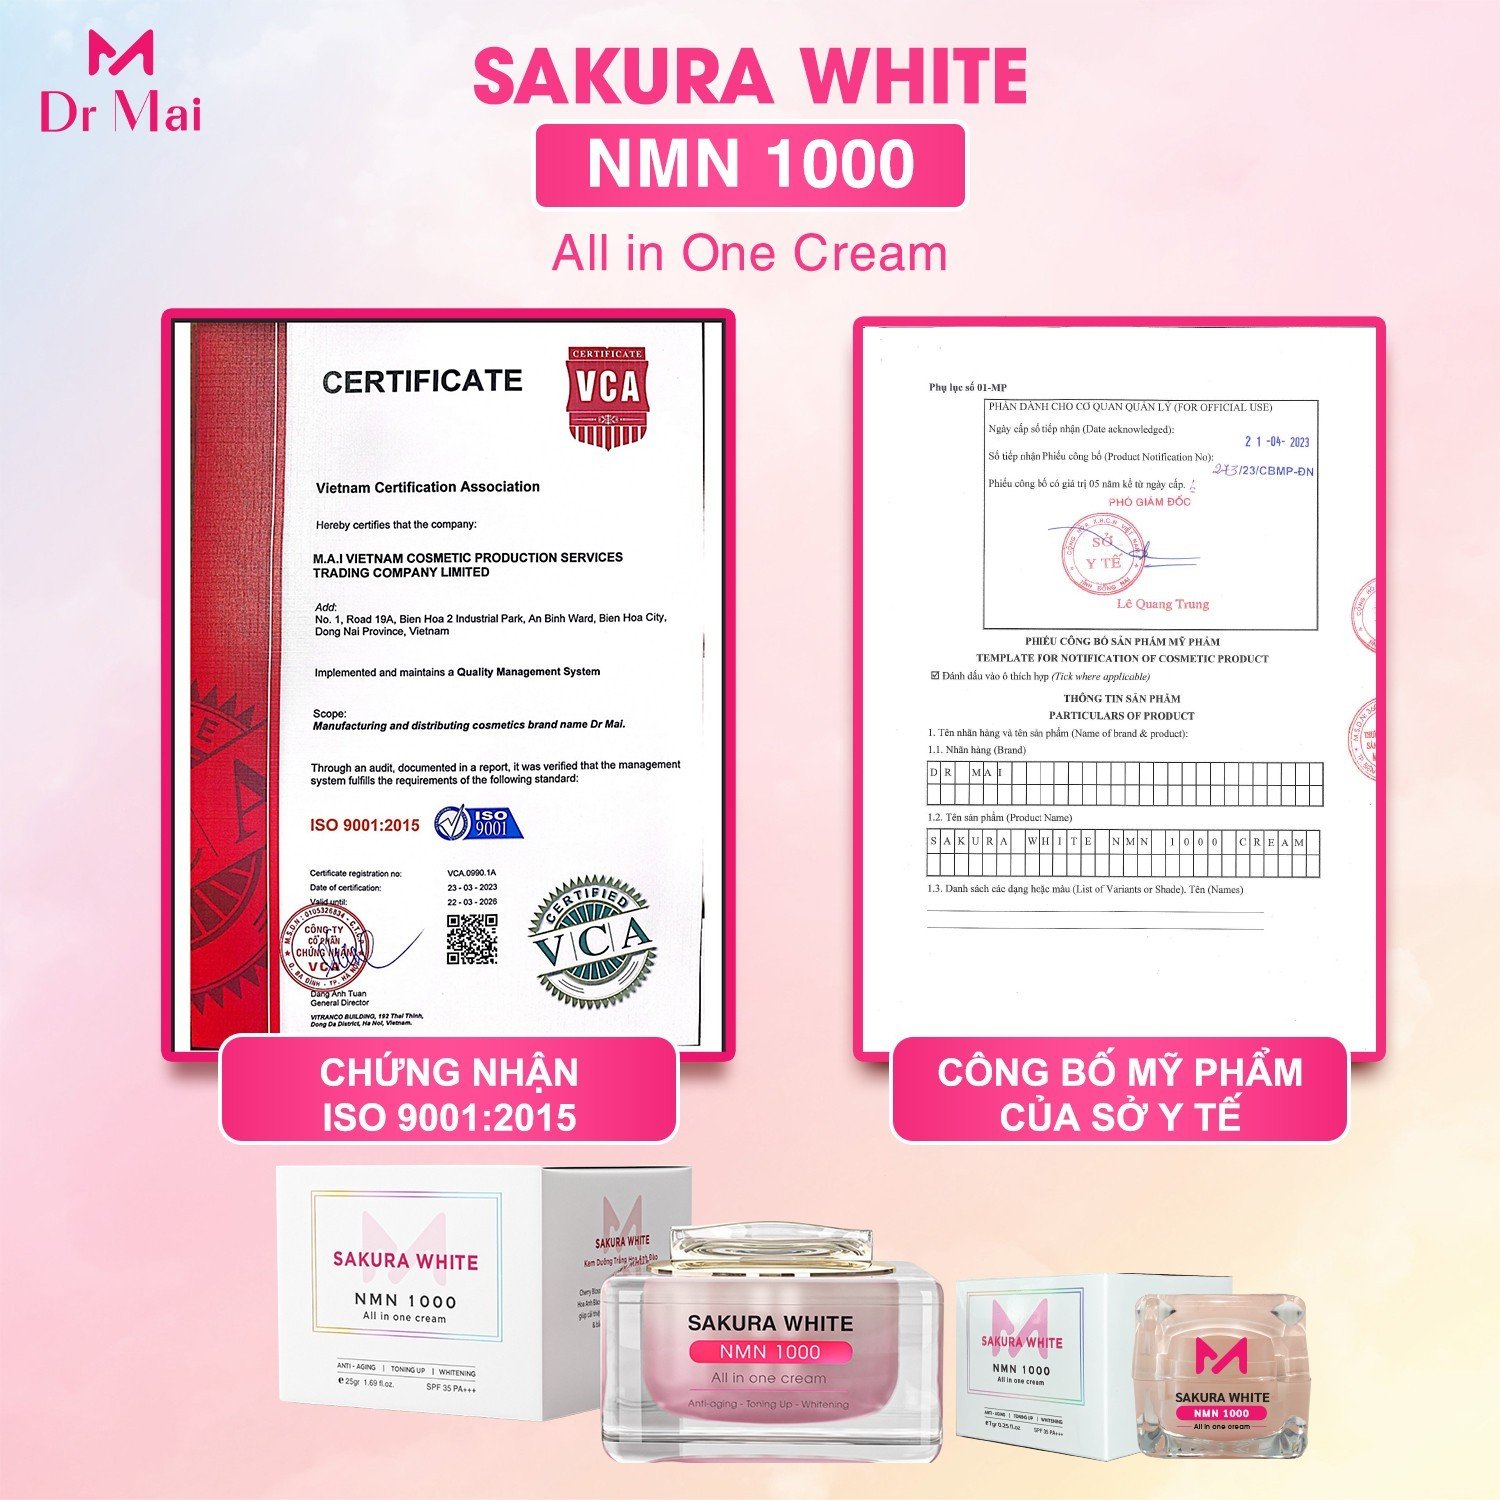 Kem Sakura White Nmn 1000 giúp dưỡng trắng, chống nắng